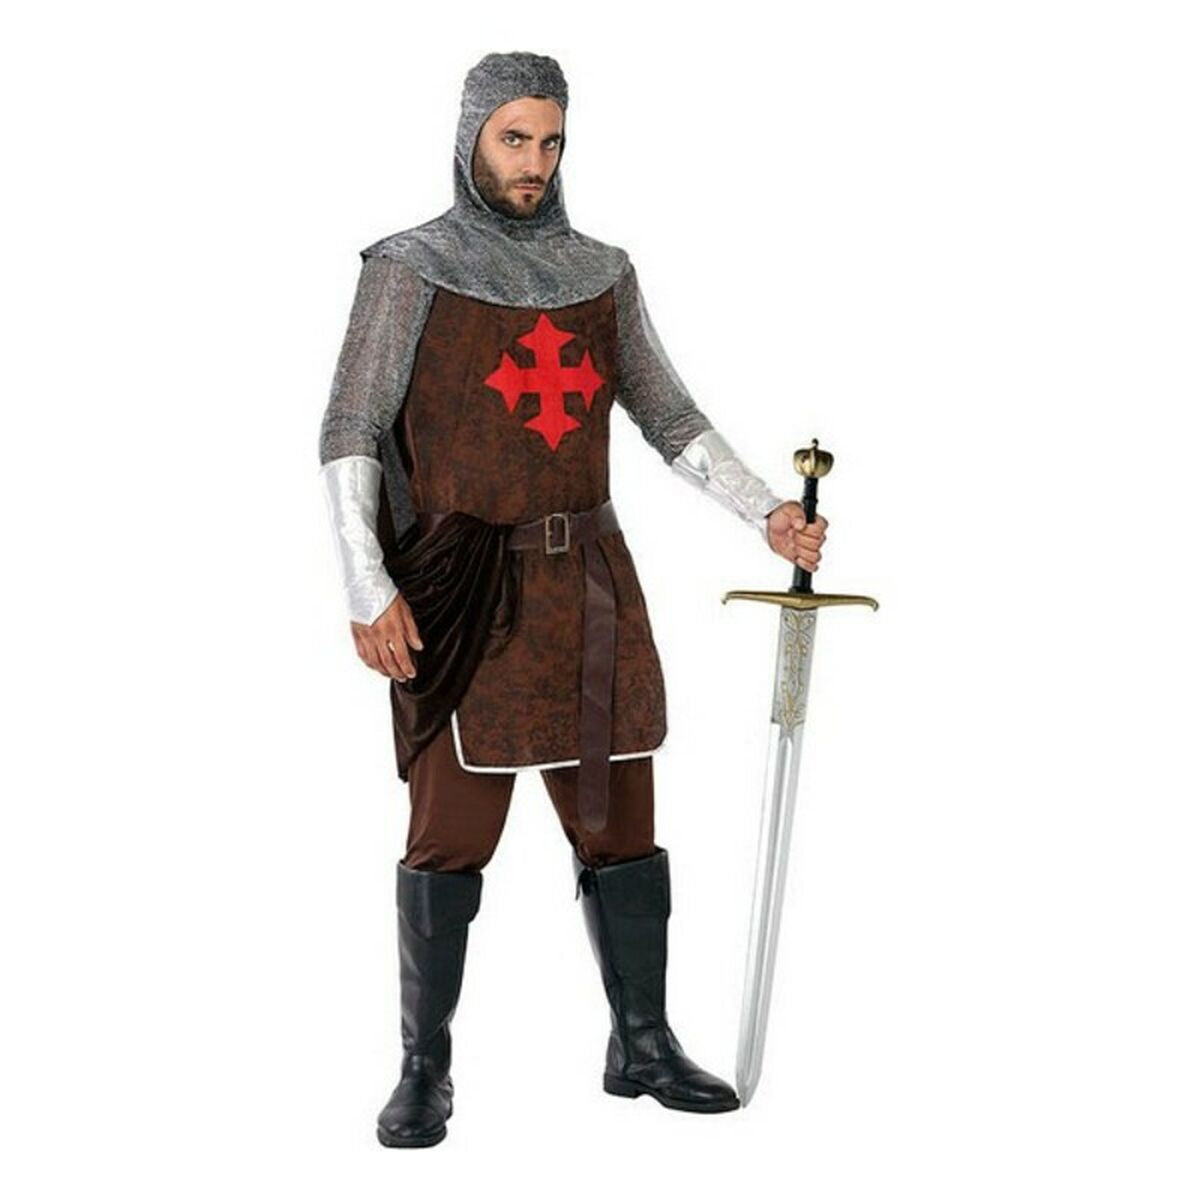 Costume per Adulti 113954 Cavaliere delle Crociate Taglia:XS/S - Disponibile in 3-4 giorni lavorativi